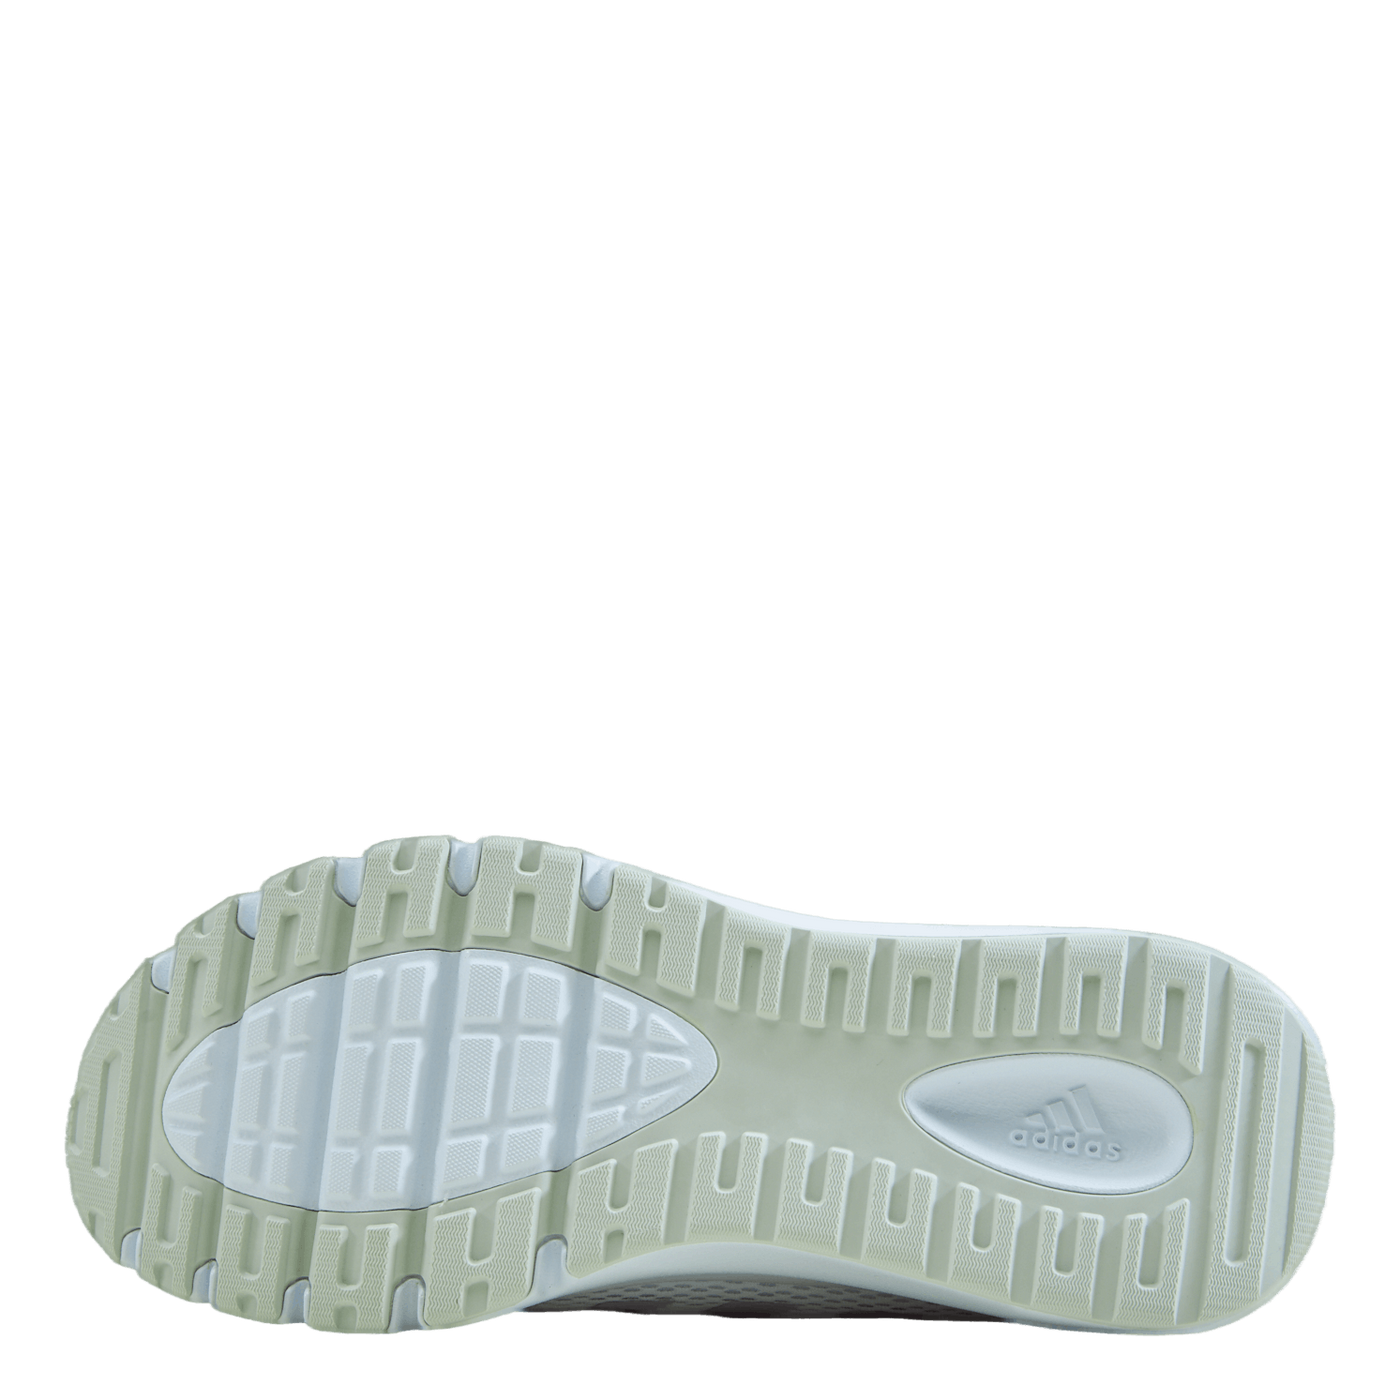 Fluidup Shoes Cloud White / Mapume / Almpnk